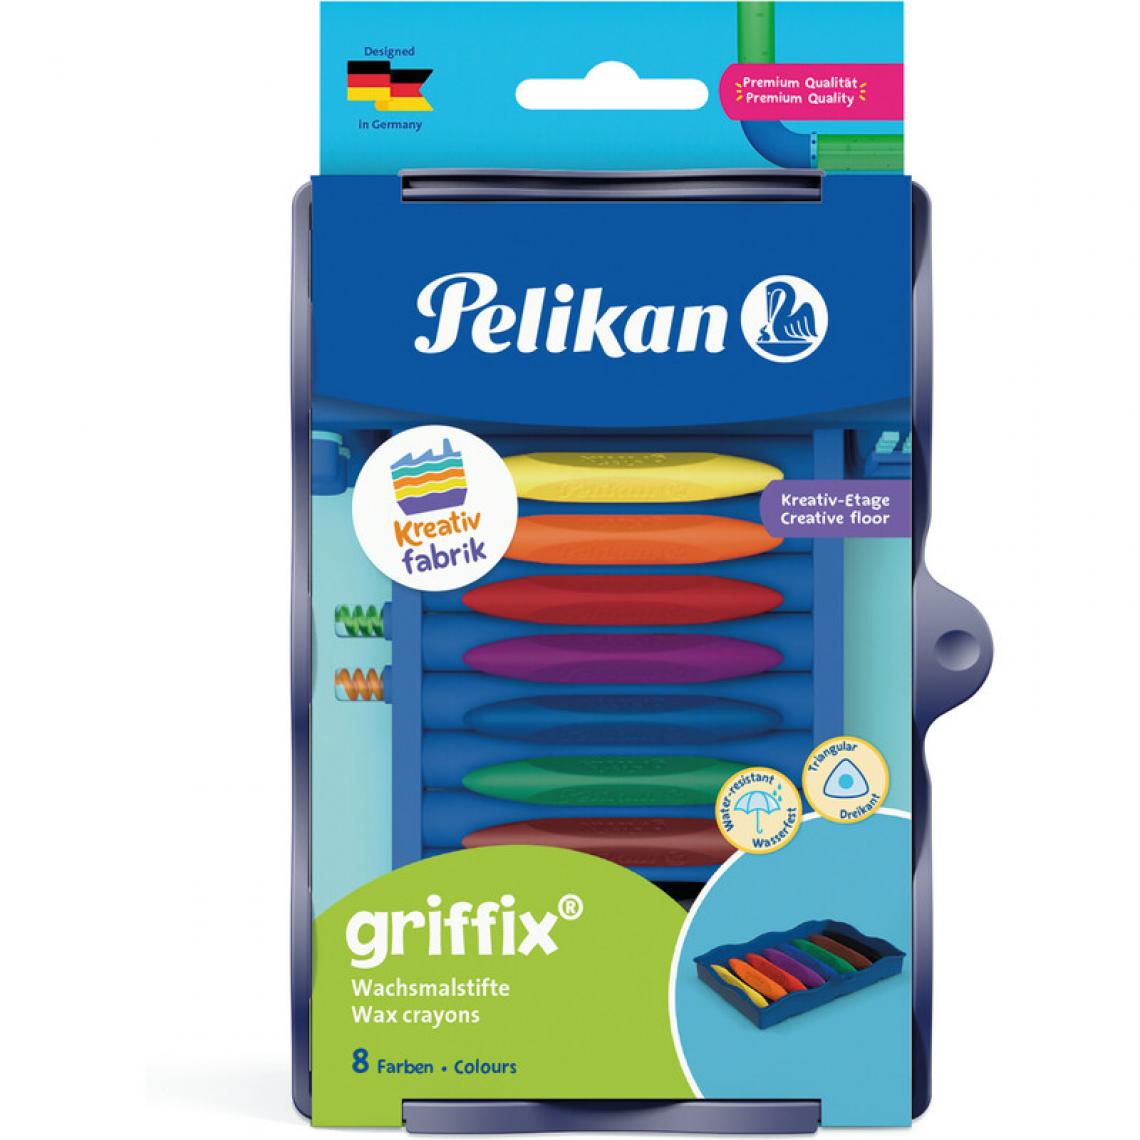 Pelikan - Pelikan Kreativfabrik Crayons de cire griffix, 8 couleurs () - Outils et accessoires du peintre